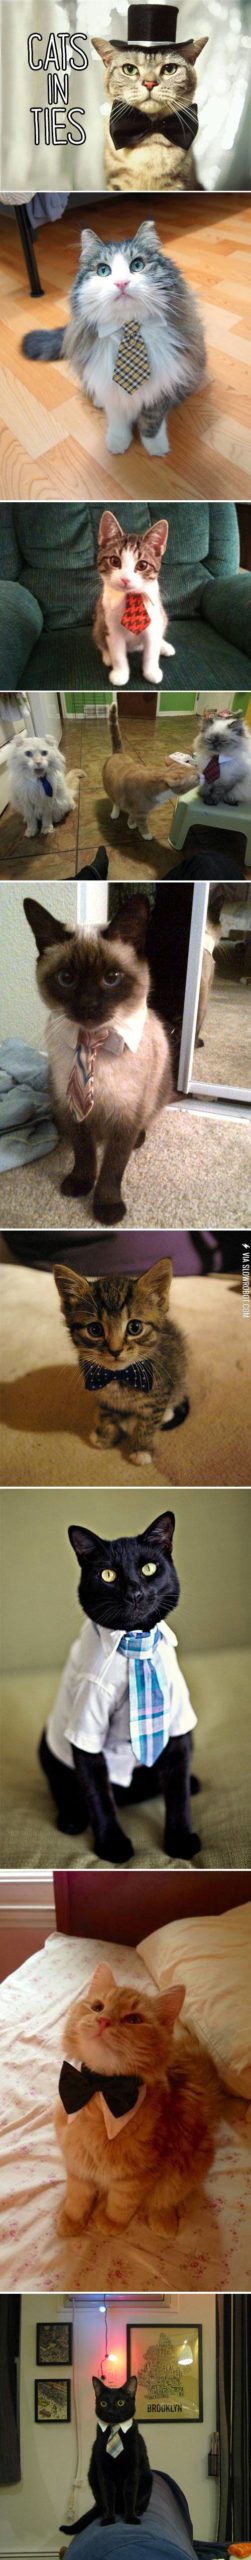 Cats+in+ties.